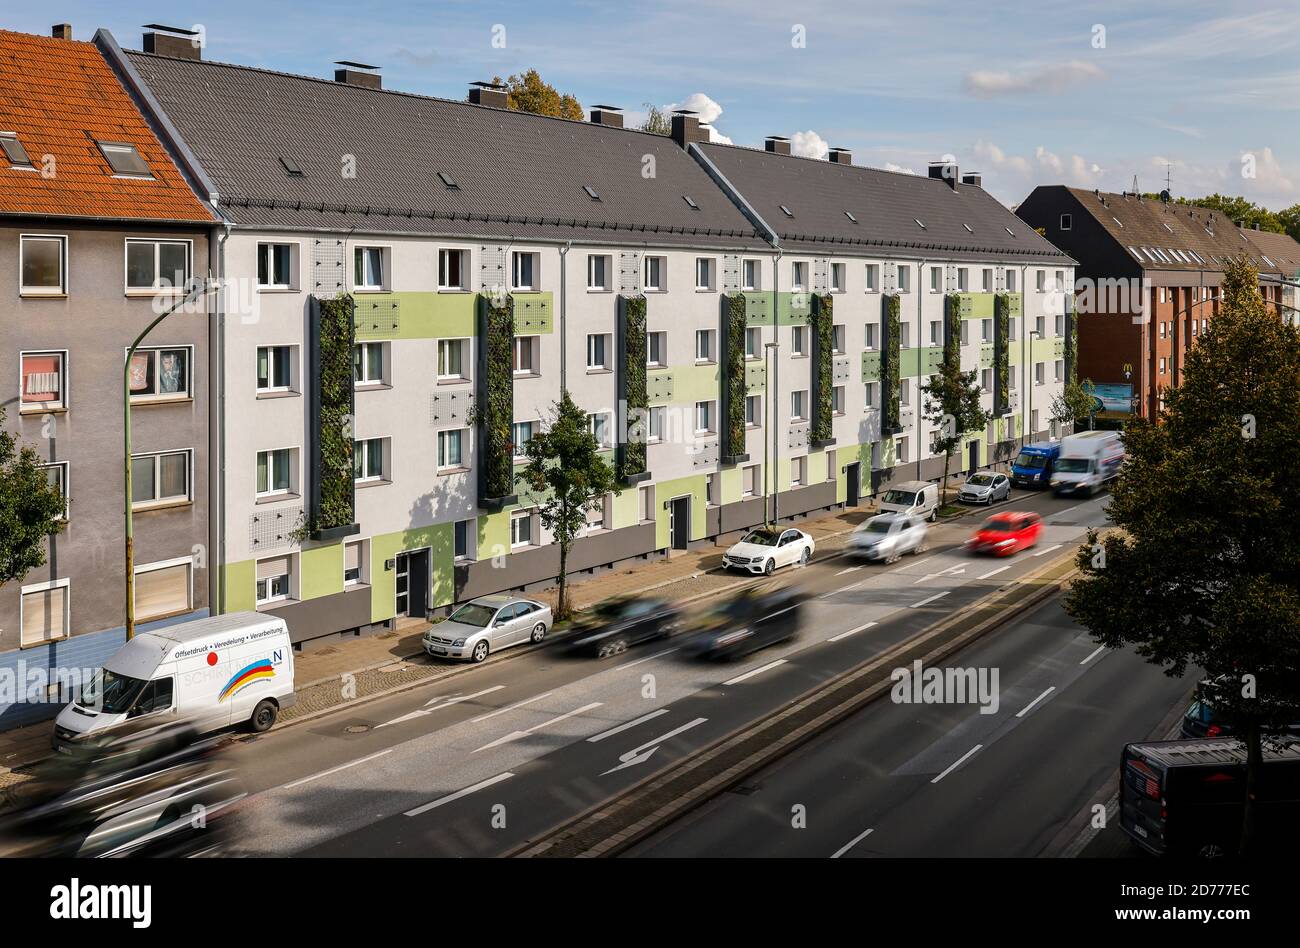 Essen, Ruhrgebiet, Nordrhein-Westfalen, Deutschland - wandgebundene Fassadenbegrünung an frisch reorganisierten Häusern der Allbau Wohnungsbaugesellschaft Stockfoto